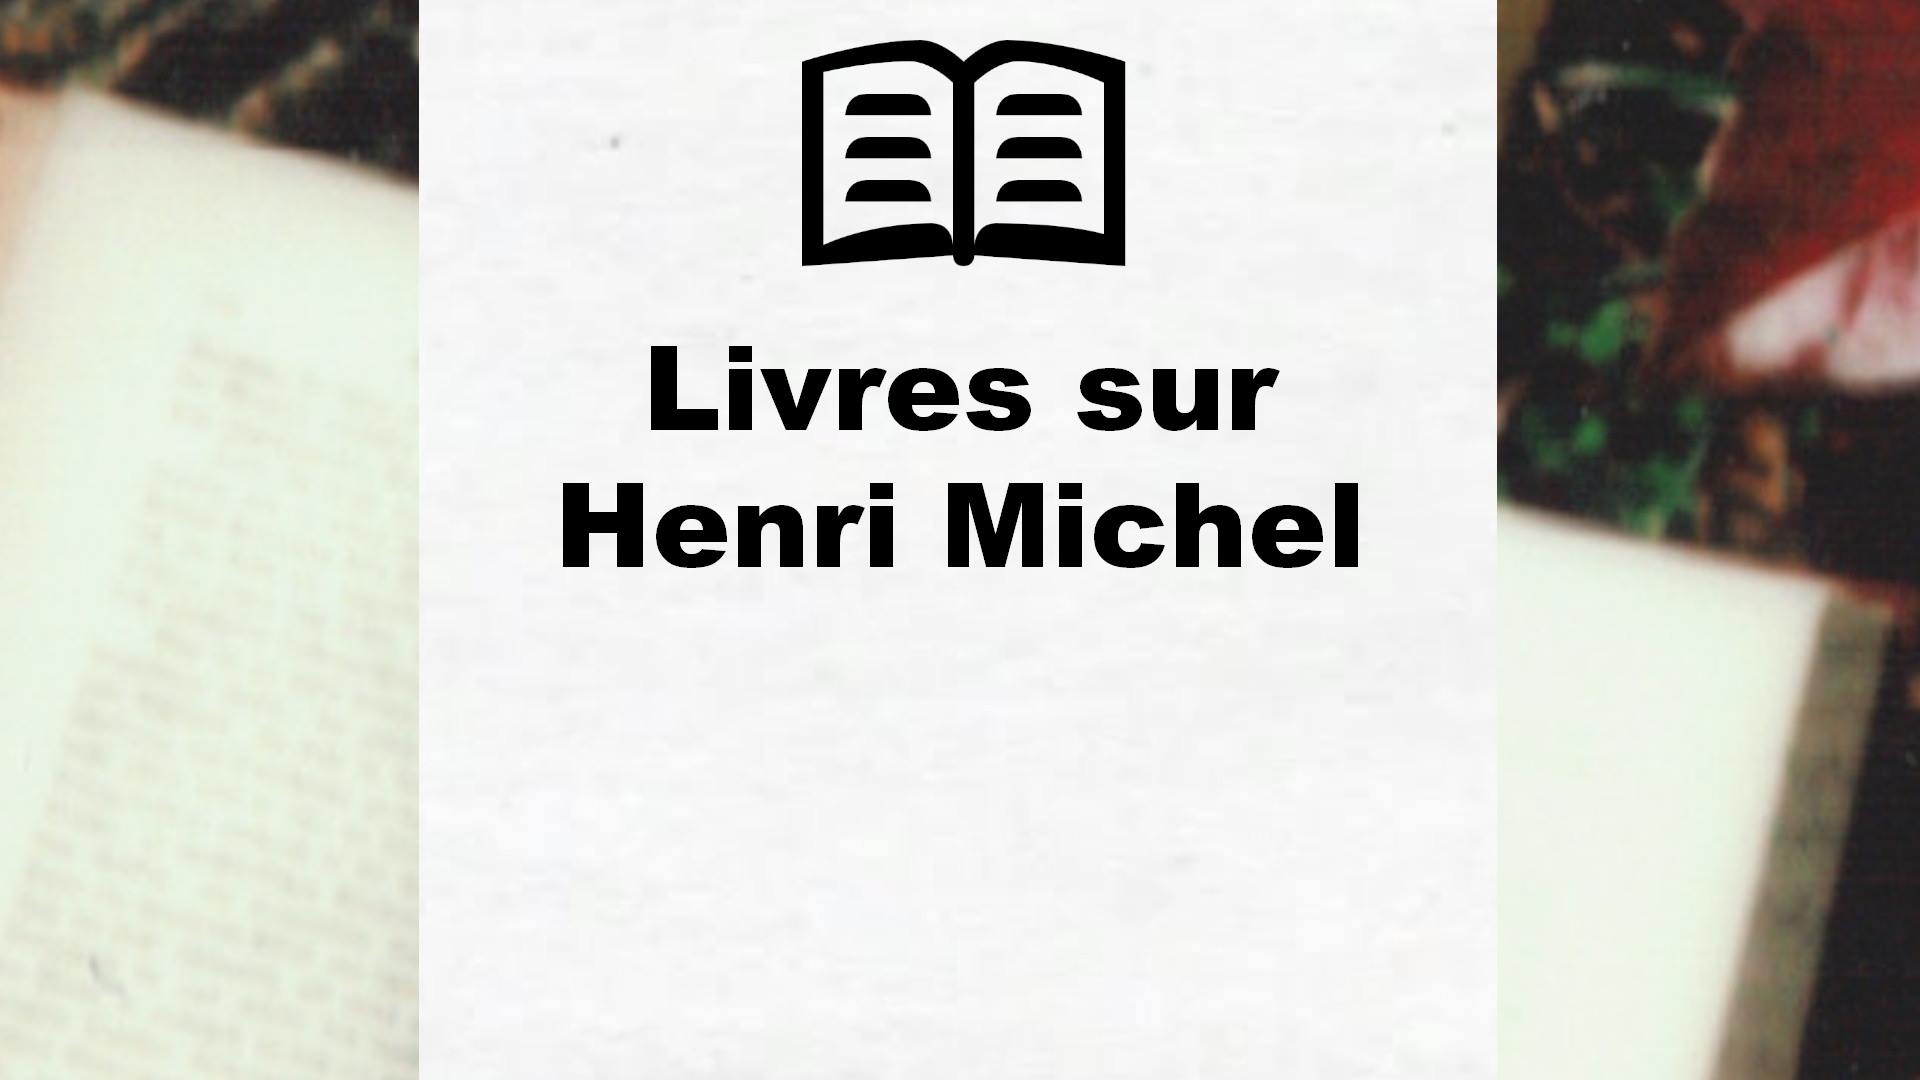 Livres sur Henri Michel